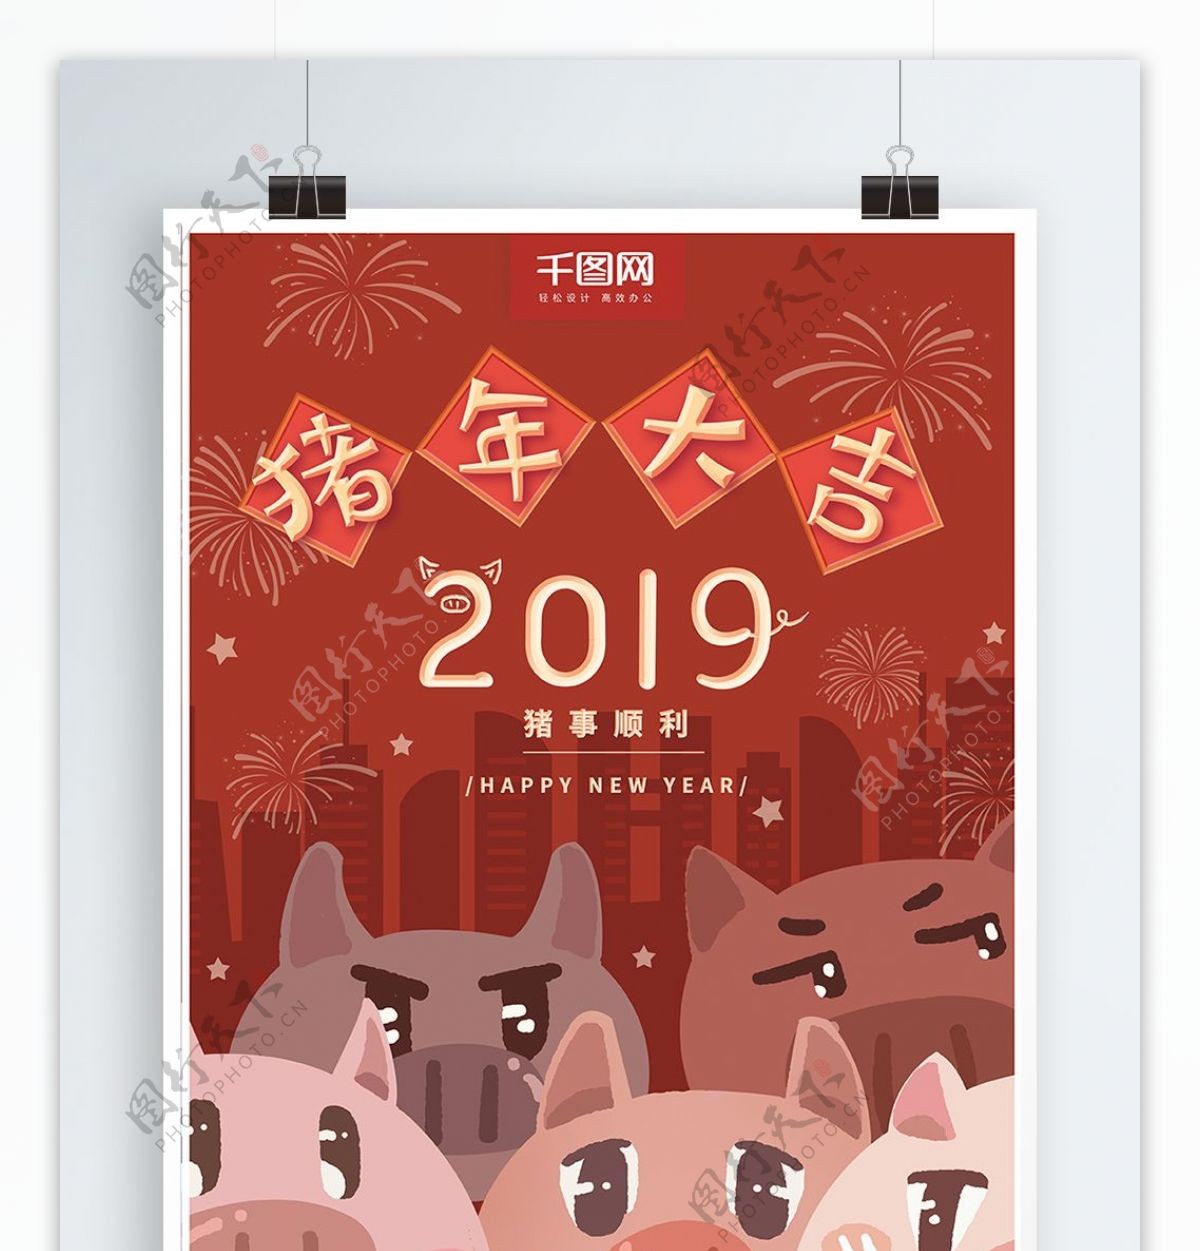 原创手绘可爱猪年大吉春节祝福海报